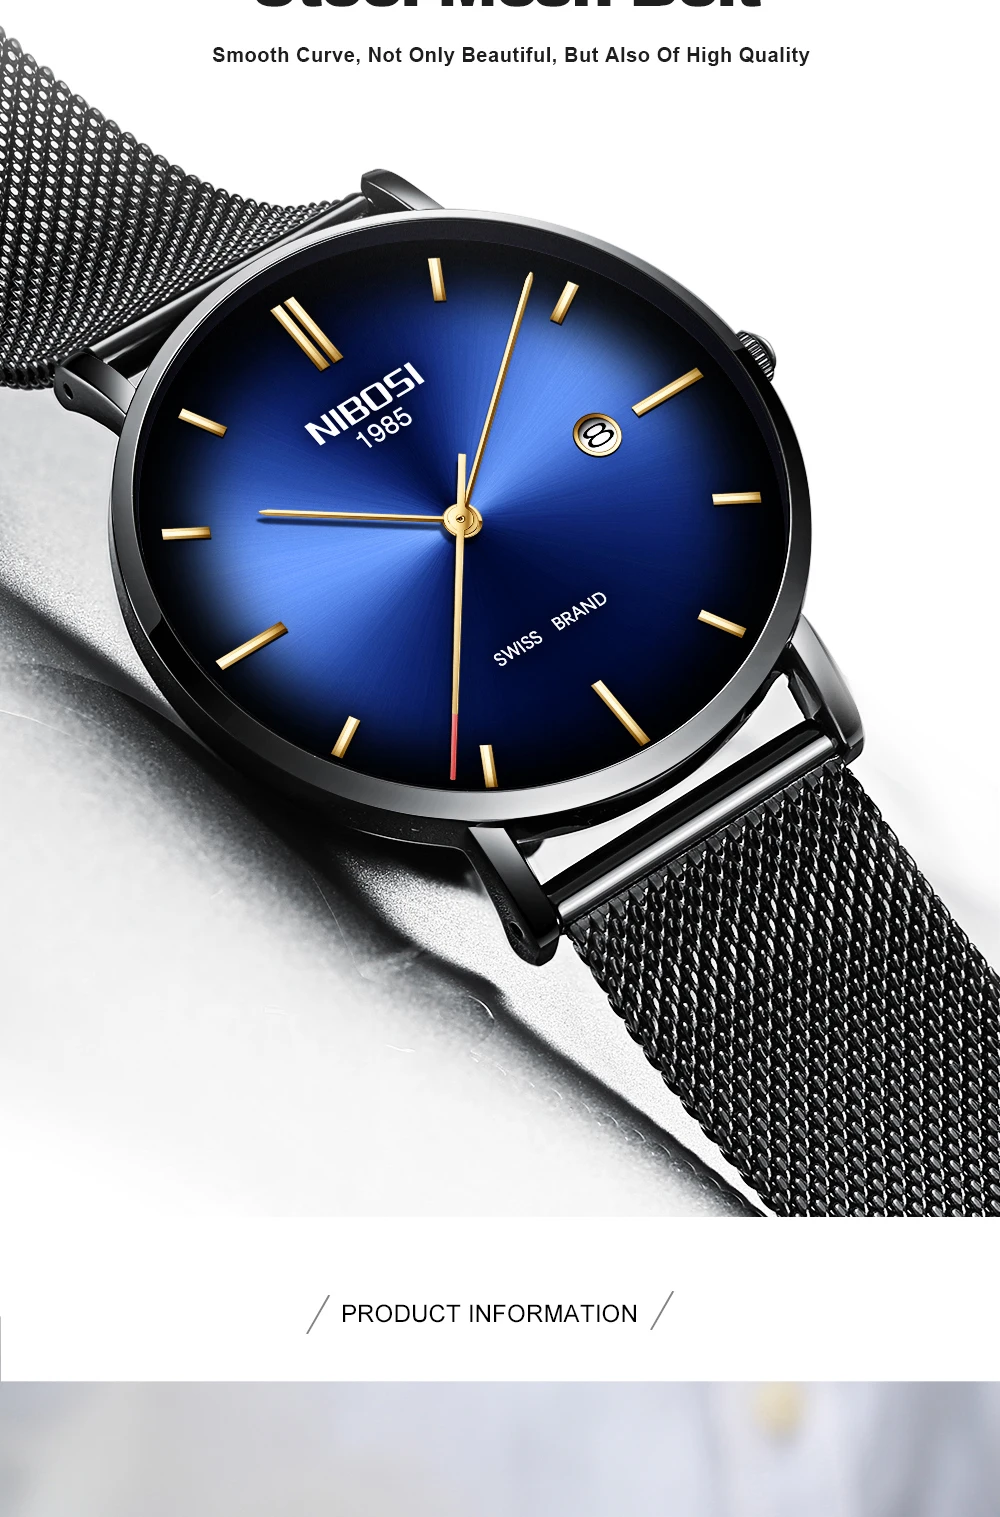 NIBOSI Топ бренд класса люкс часы Модные мужские кварцевые часы для мужчин стальной сетчатый ремешок бизнес водонепроницаемые спортивные часы Relogio Masculino